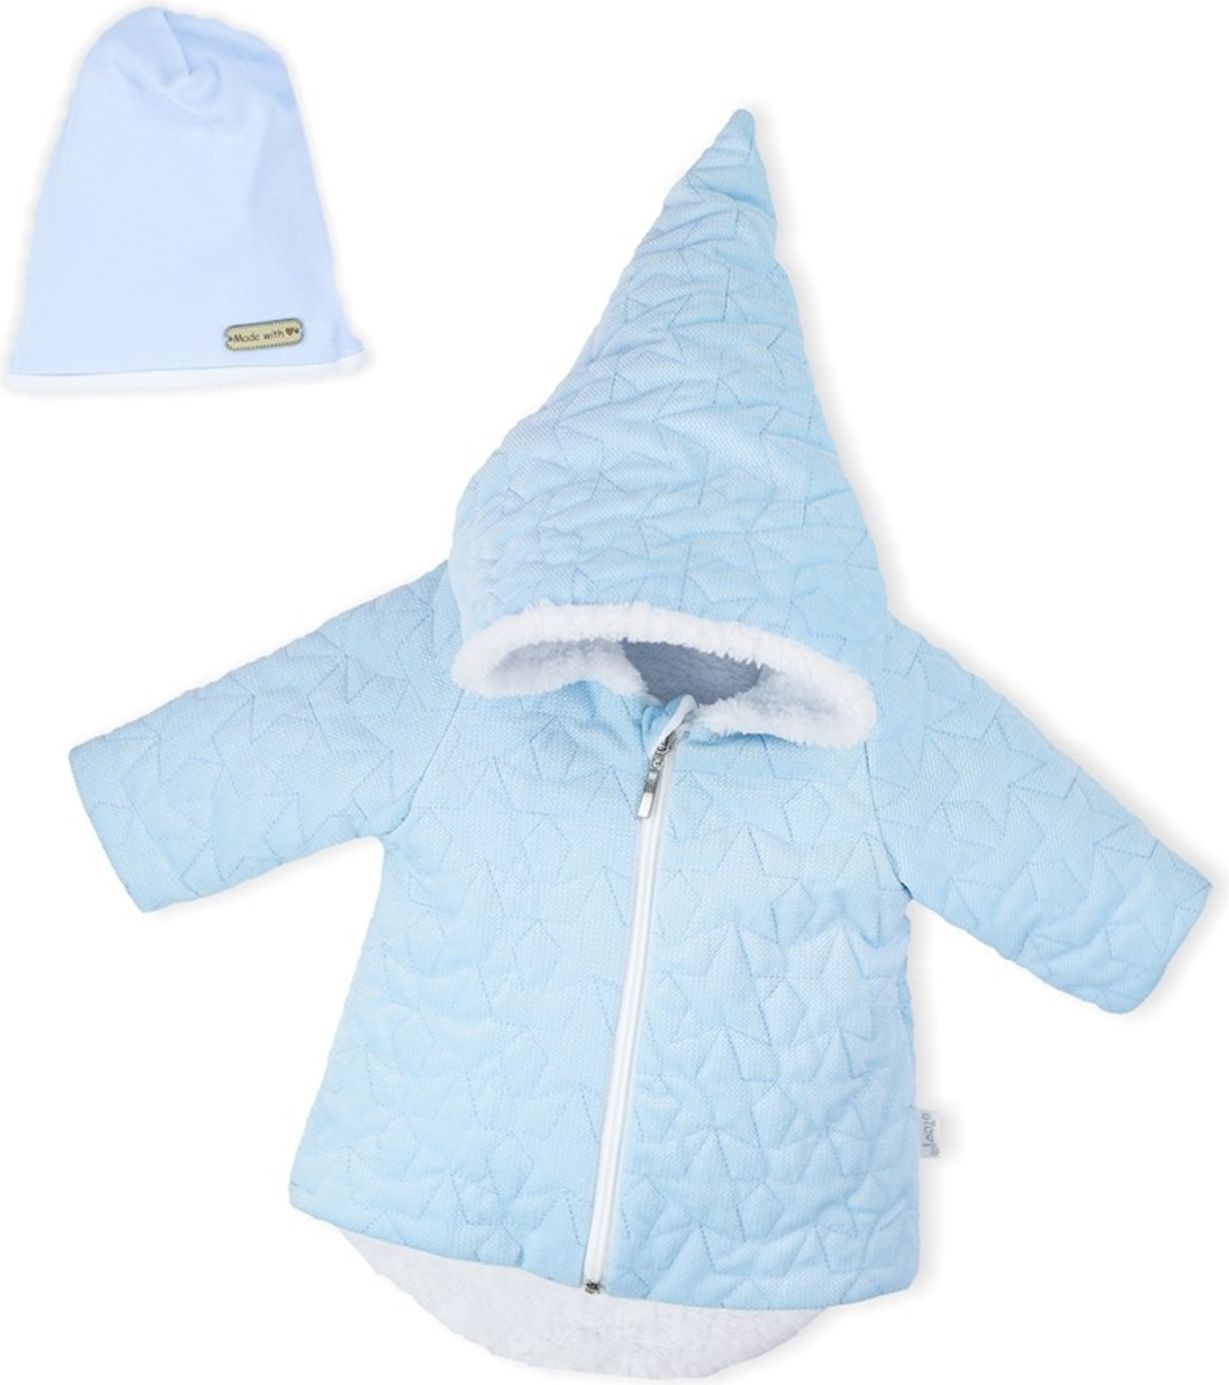 Zimní kojenecký kabátek s čepičkou Nicol Kids Winter modrý - Zimní kojenecký kabátek s čepičkou Nicol Kids Winter modrý - obrázek 1